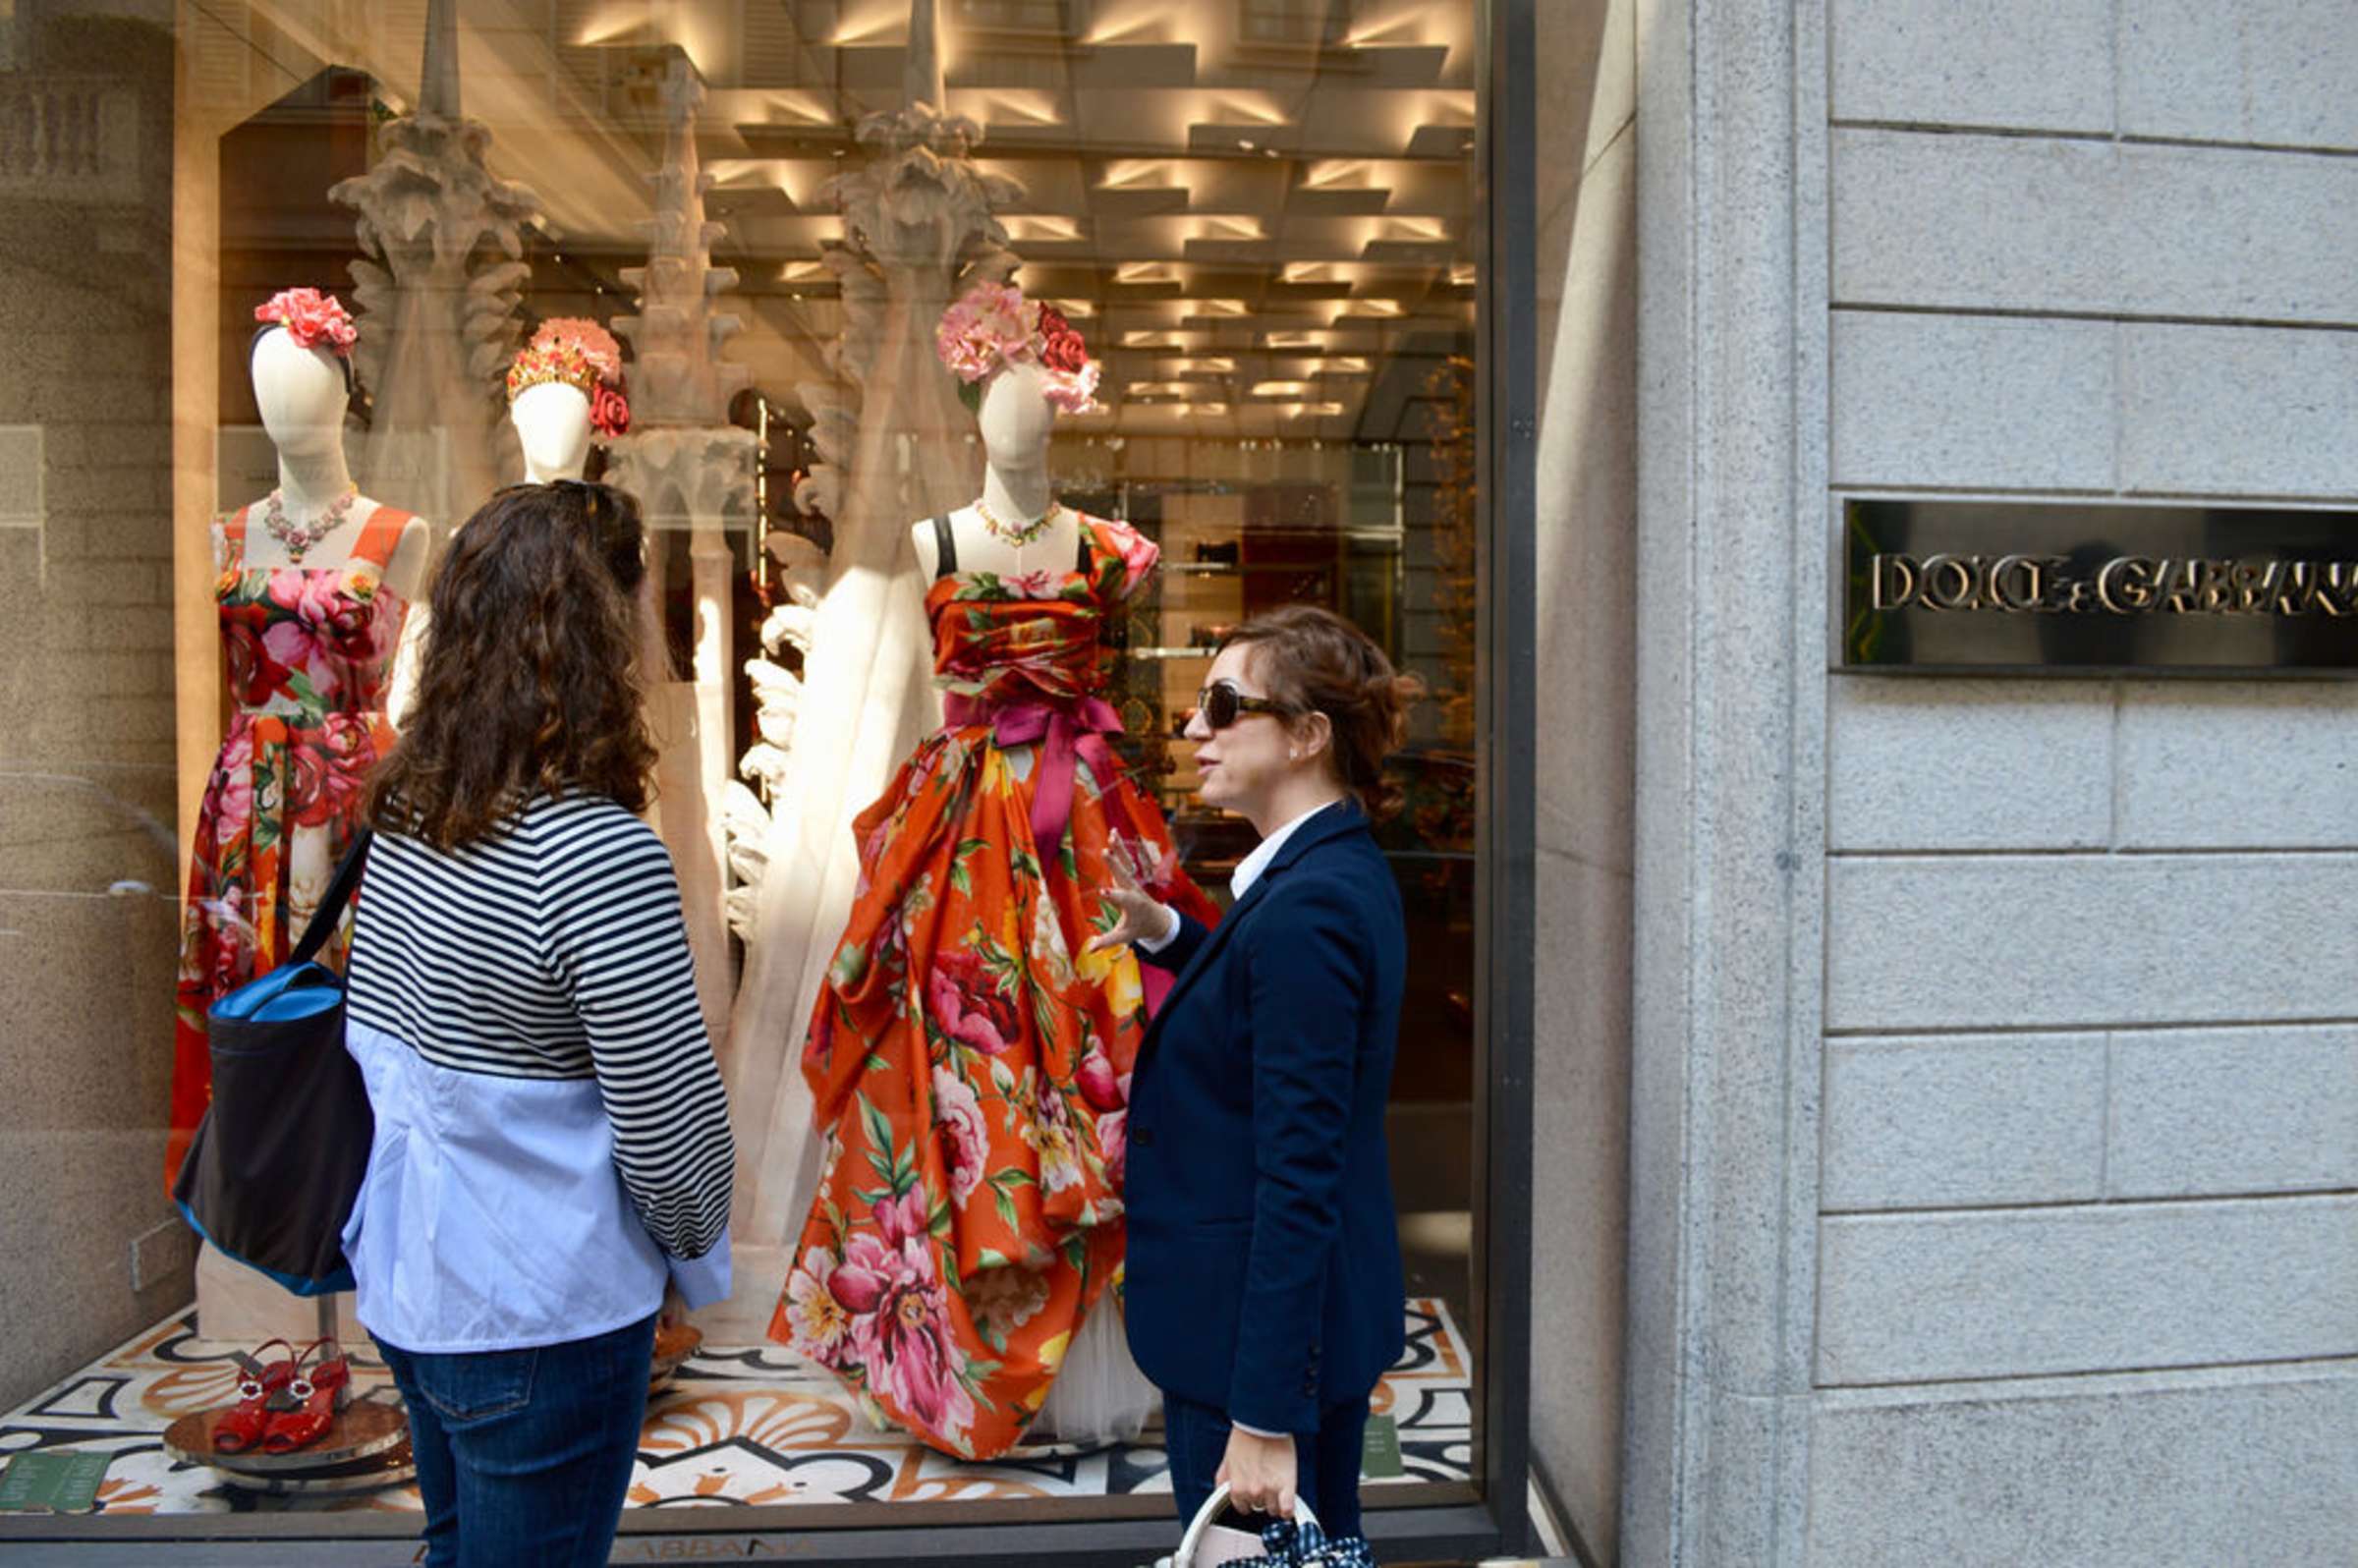 Milan's fashion district! - Review of Via Monte Napoleone, Milan